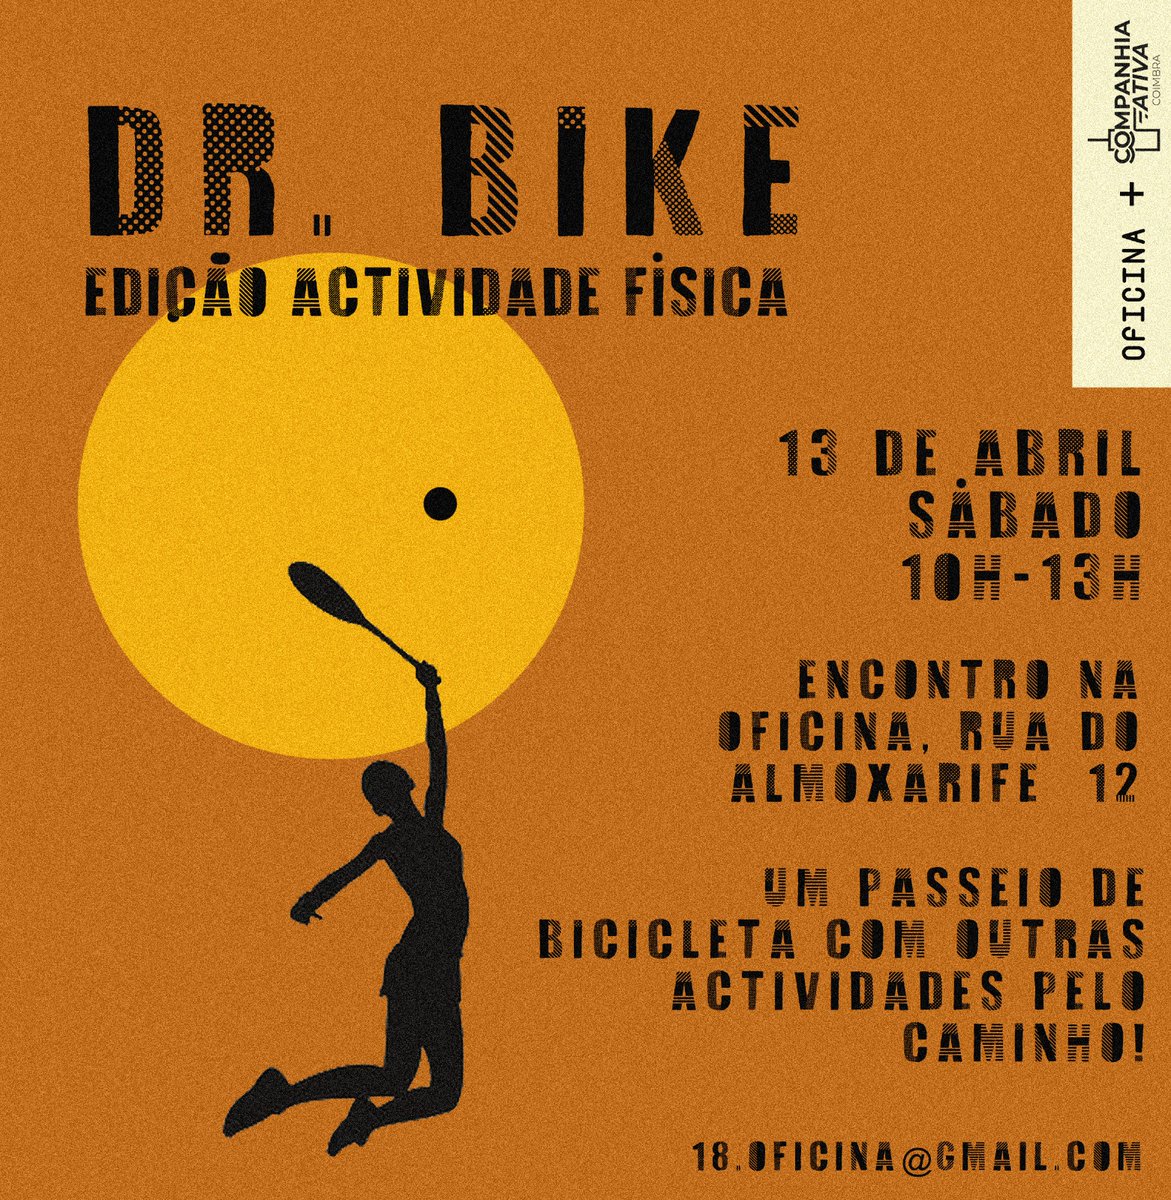 Este sábado, dia 13 de abril, das 10h às 13h, teremos a 2.ª edição do Dr. Bike organizado pela Oficina e Companhia Ativa.

🚲 O tema é atividade física e o percurso vai ser urbano unindo a Oficina, o Choupal e o Parque Verde.